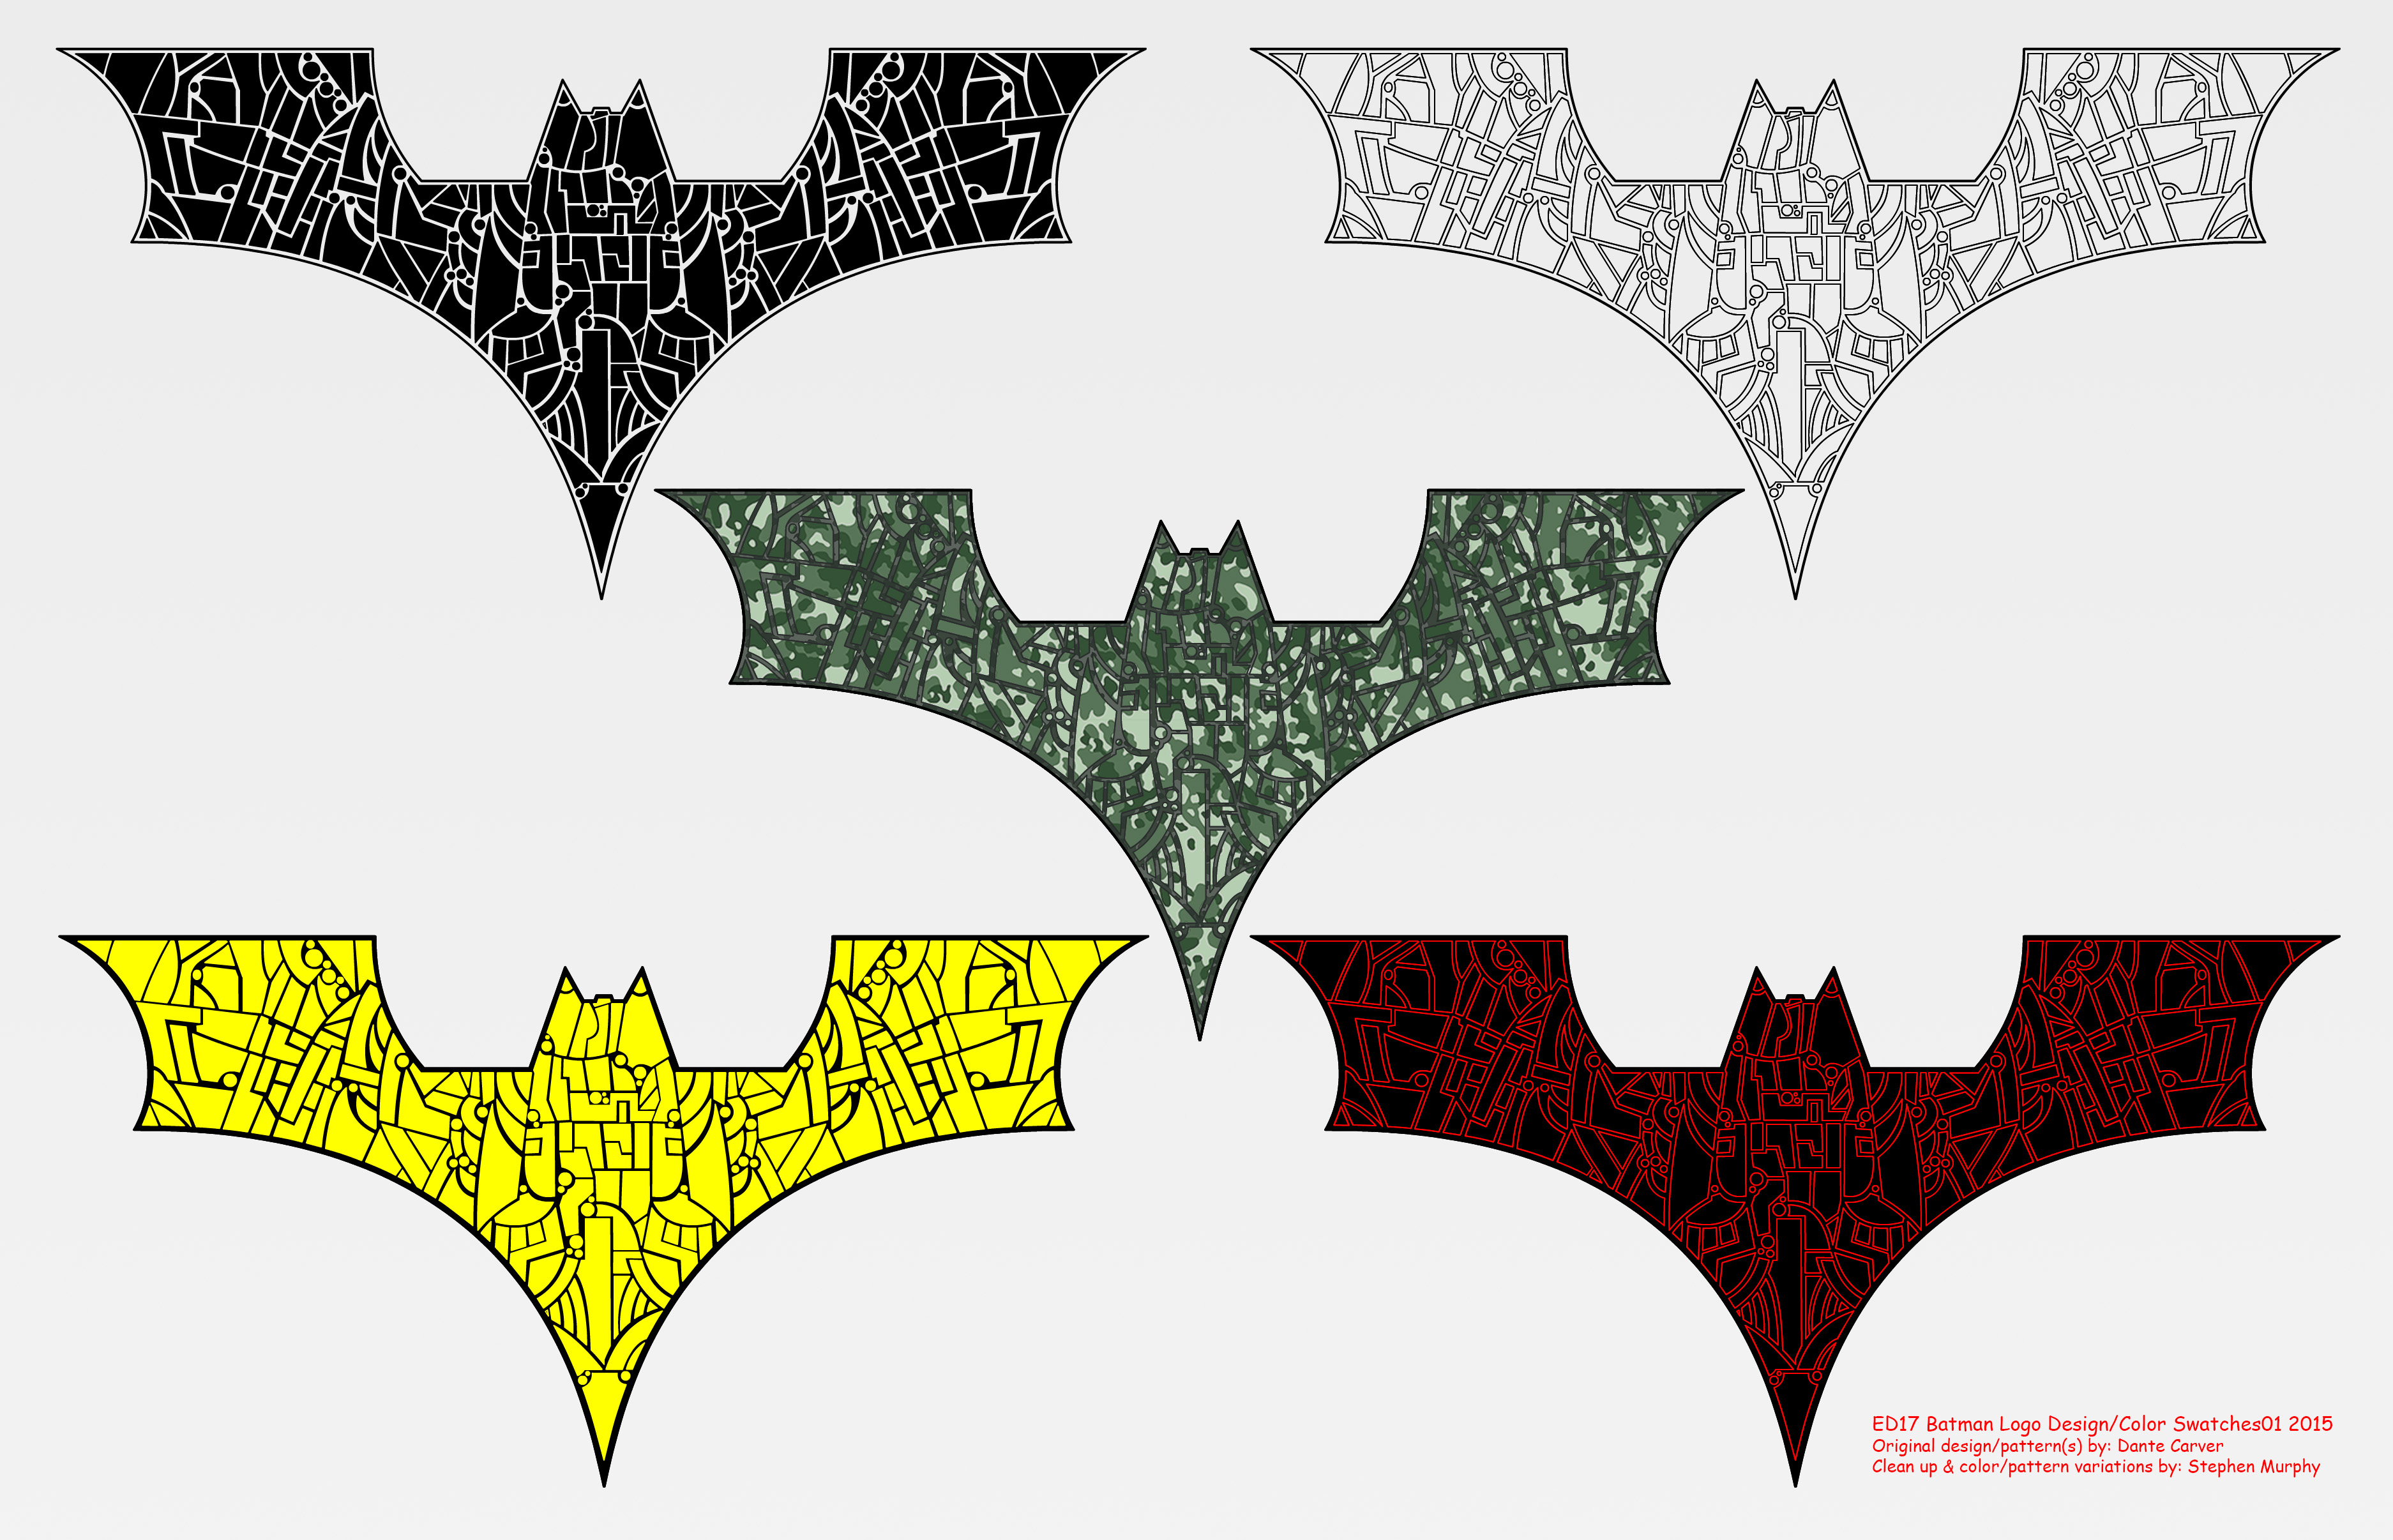 Earth_D17: Batman Logo Layout01 2015 by Wickedlantern80 on DeviantArt